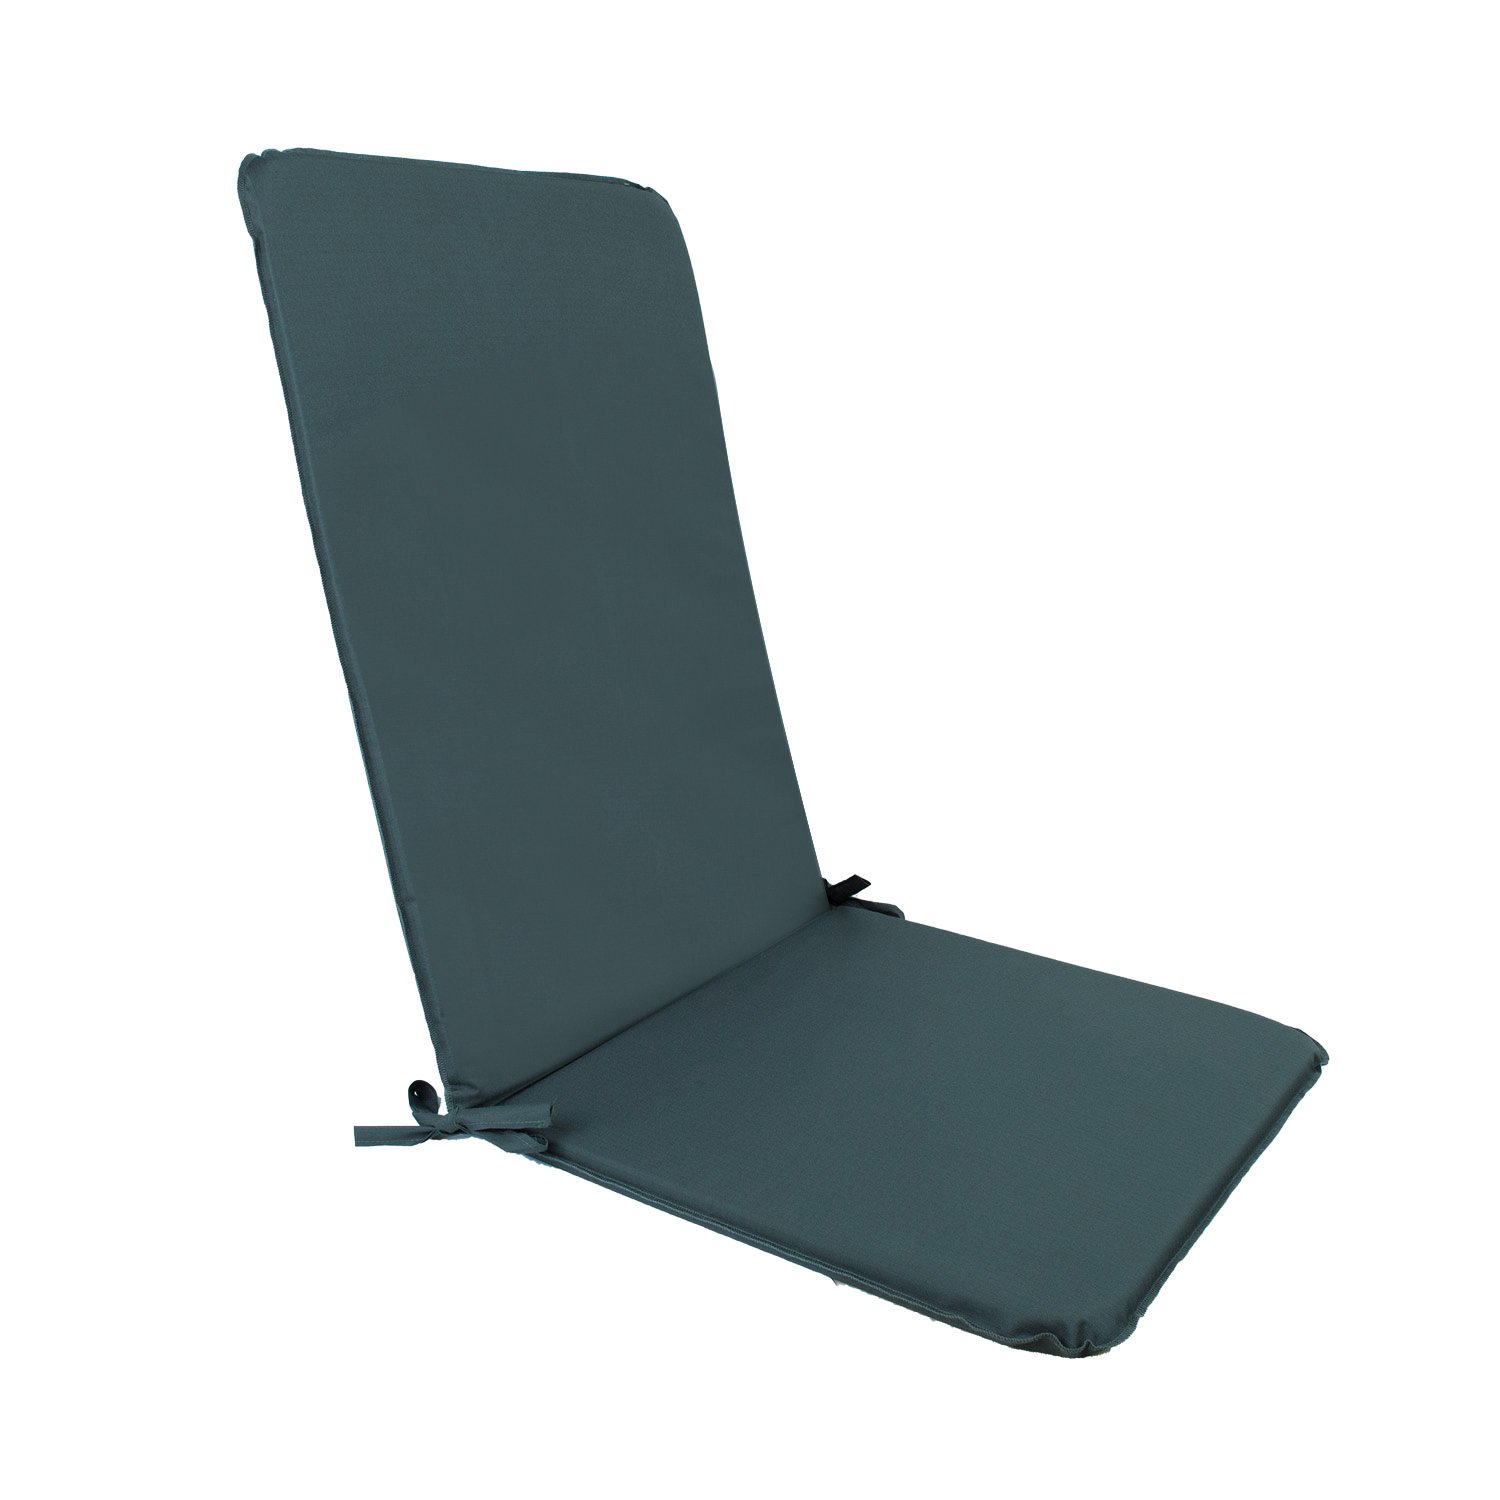 Kėdės paklotėlis OHIO-2 waterproof, 50x120xH2,5cm, tamsiai pilka